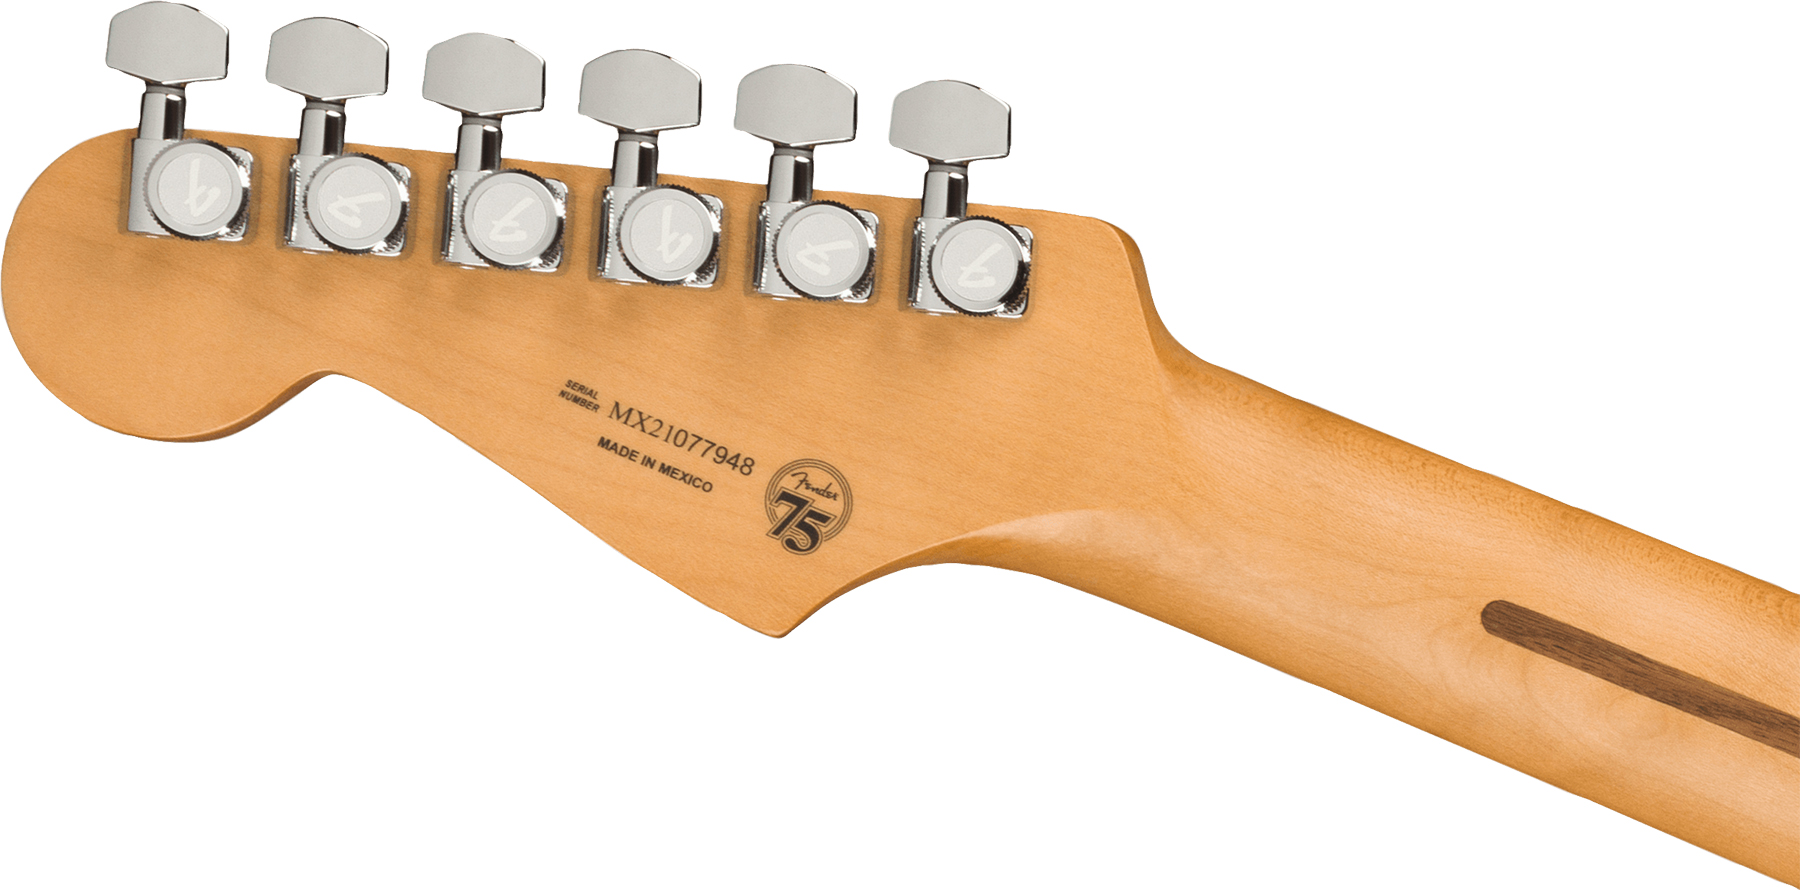 Fender Strat Player Plus Mex 3s Trem Pf - Aged Candy Apple Red - Elektrische gitaar in Str-vorm - Variation 3